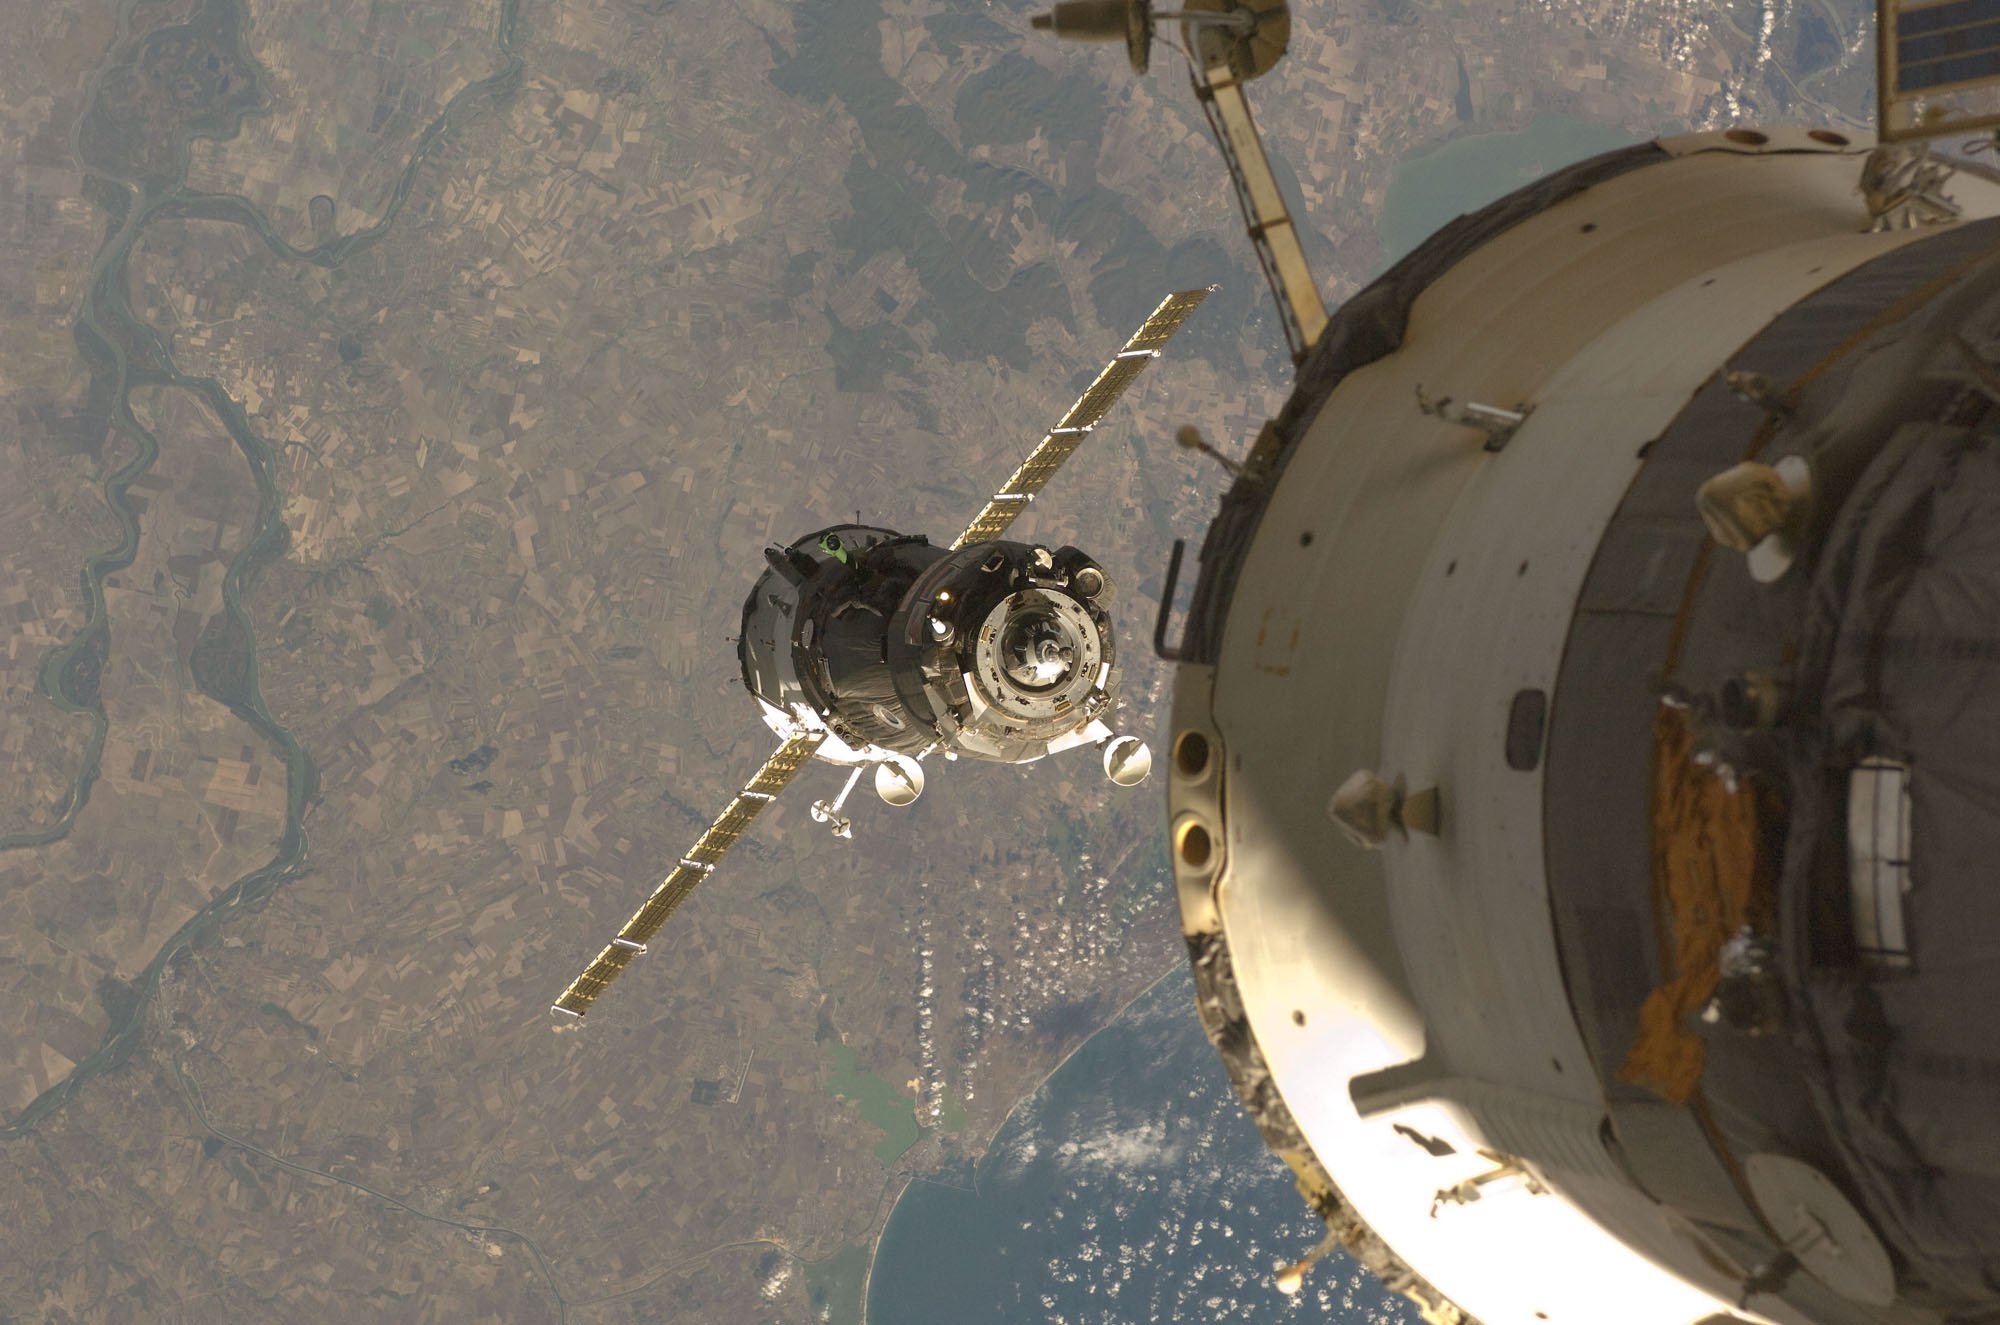 Фото космического корабля в космосе. Кабина Союз ТМА-20м. Стыковочный модуль МКС. «Союз ТМА-М» (космический корабль). Спускаемый аппарат Союз ТМА-14м.